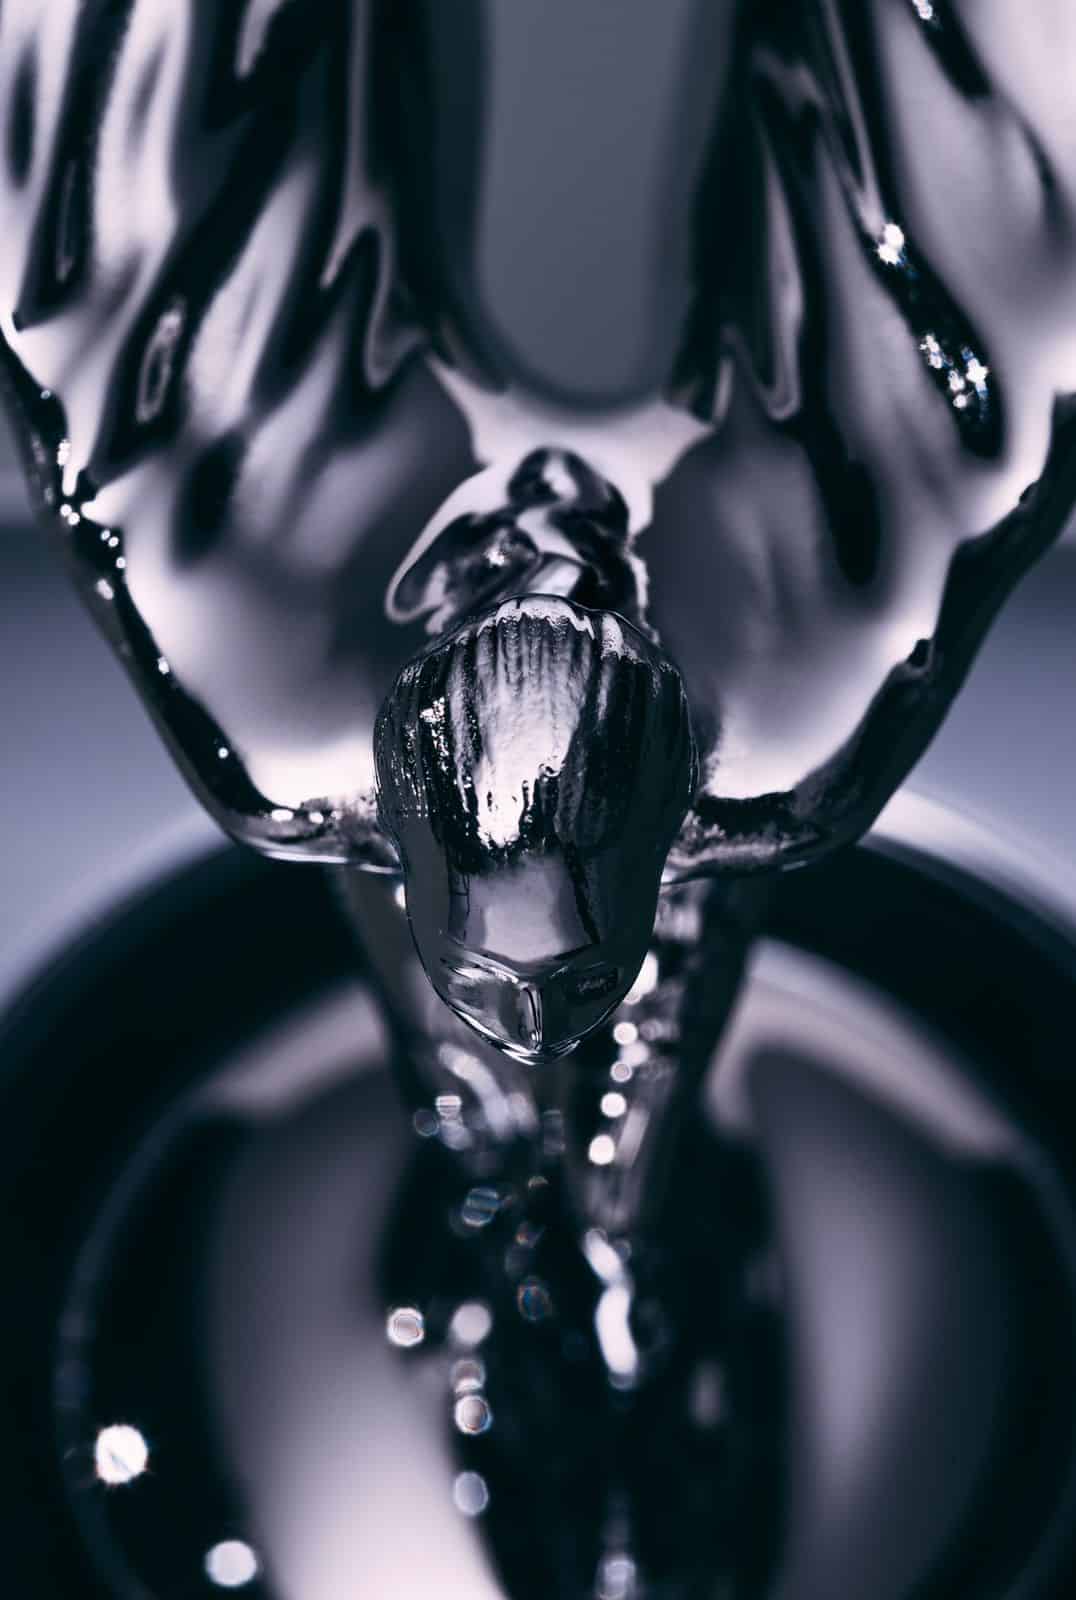 The Spirit of Ecstasy figurine ຖືກອອກແບບມາເພື່ອເຮັດຕາມແບບລົດຍົນ Rolls-Royce ທີ່ເຢັນທີ່ສຸດເທົ່າທີ່ເຄີຍມີມາ.